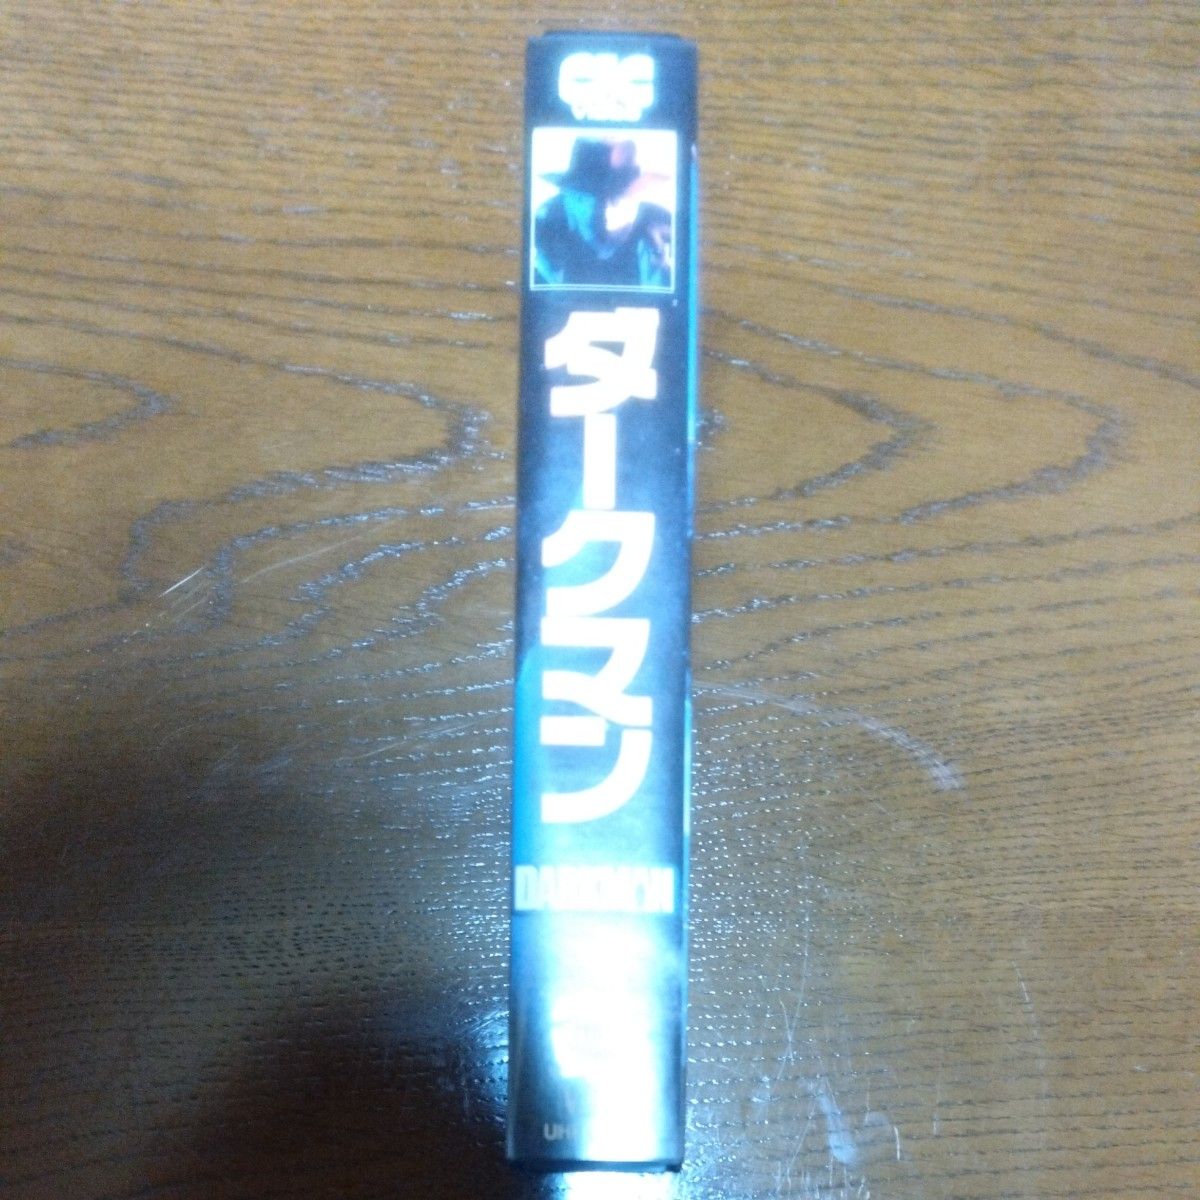 映画『ダークマン』(1991年日本公開) VHS ビデオテープ